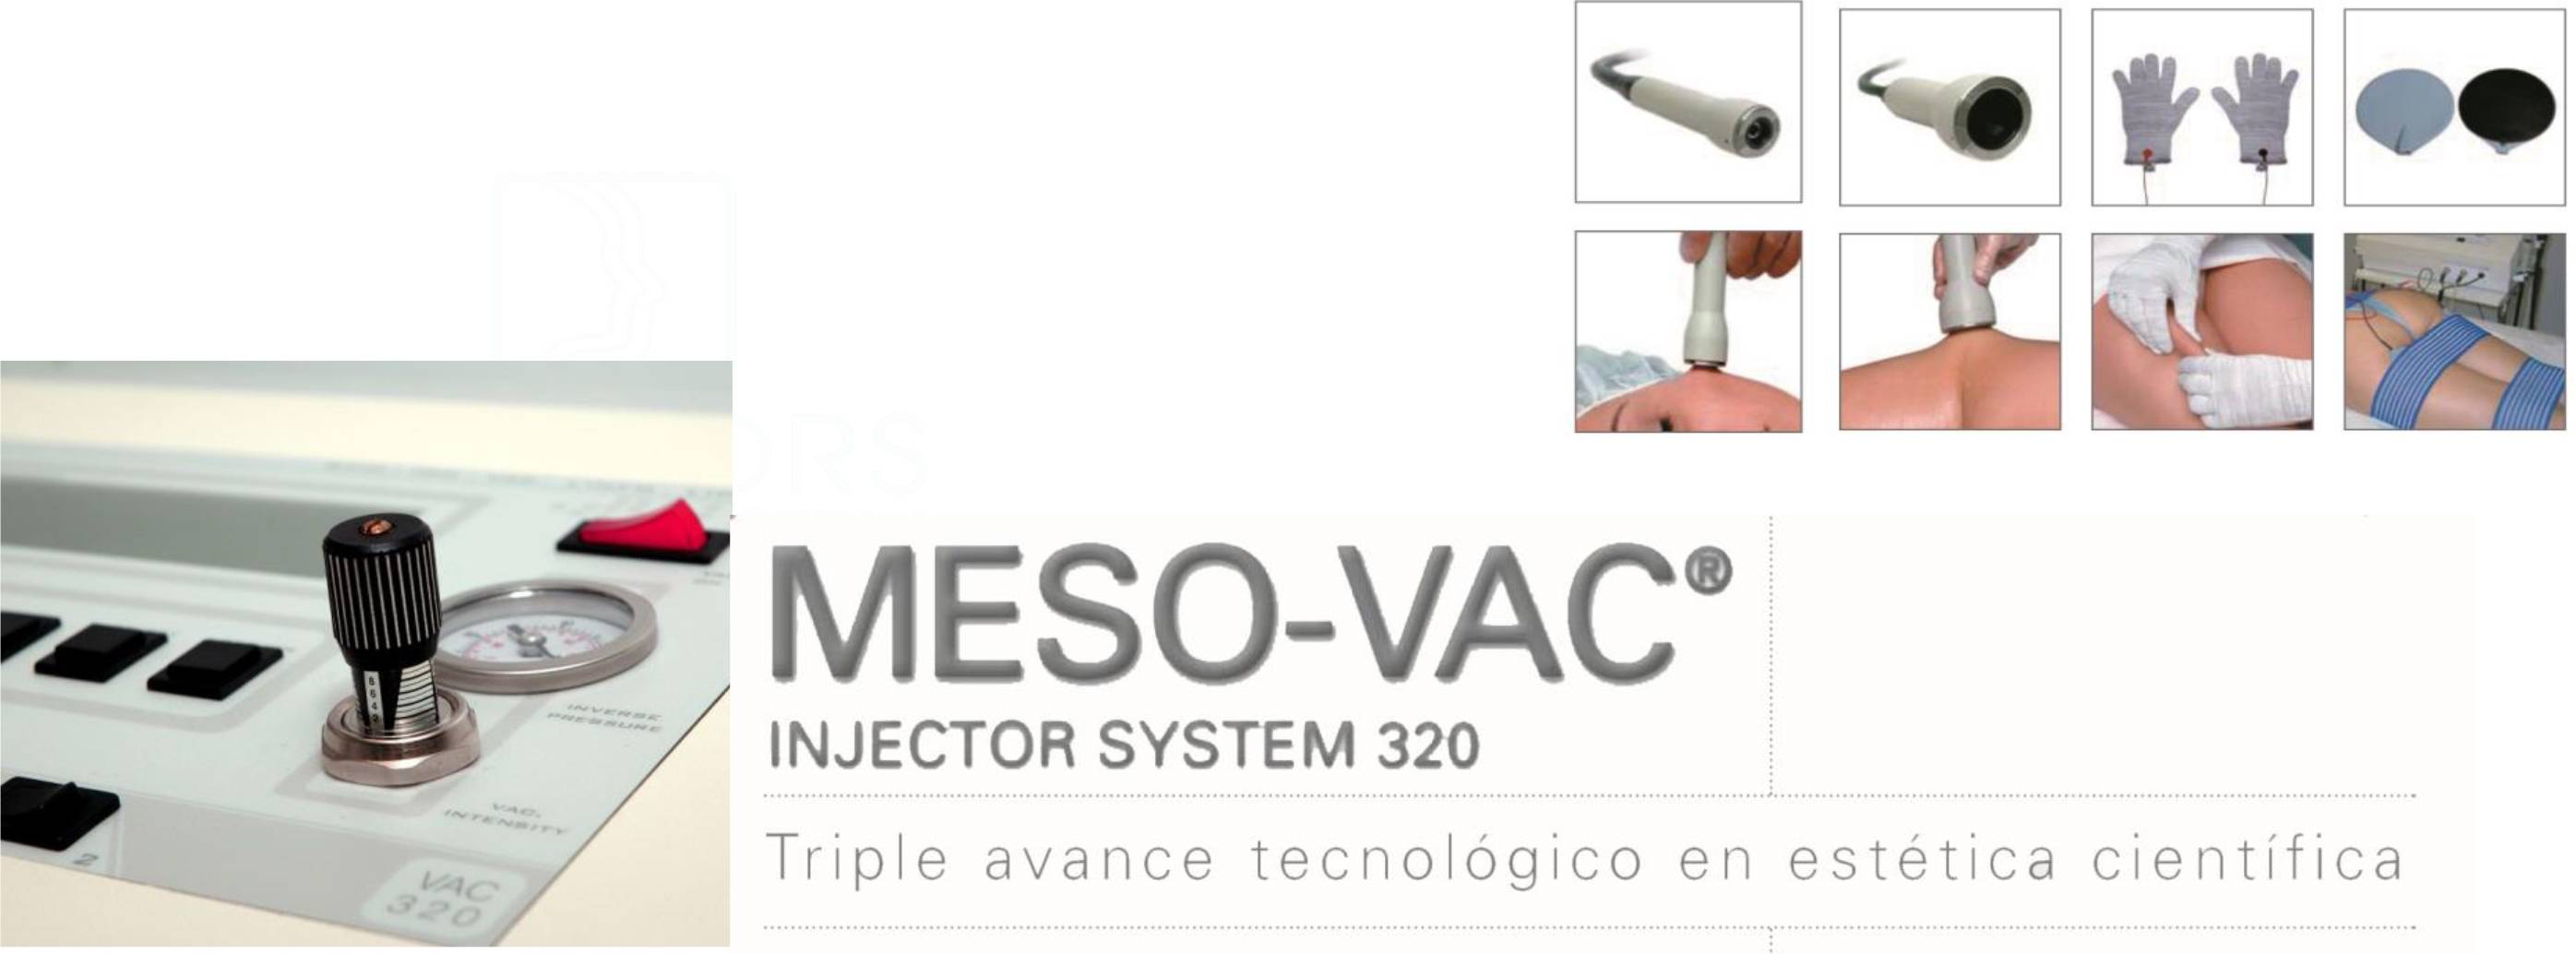 MESO-VAC INJECTOR SYSTEM (vídeo)